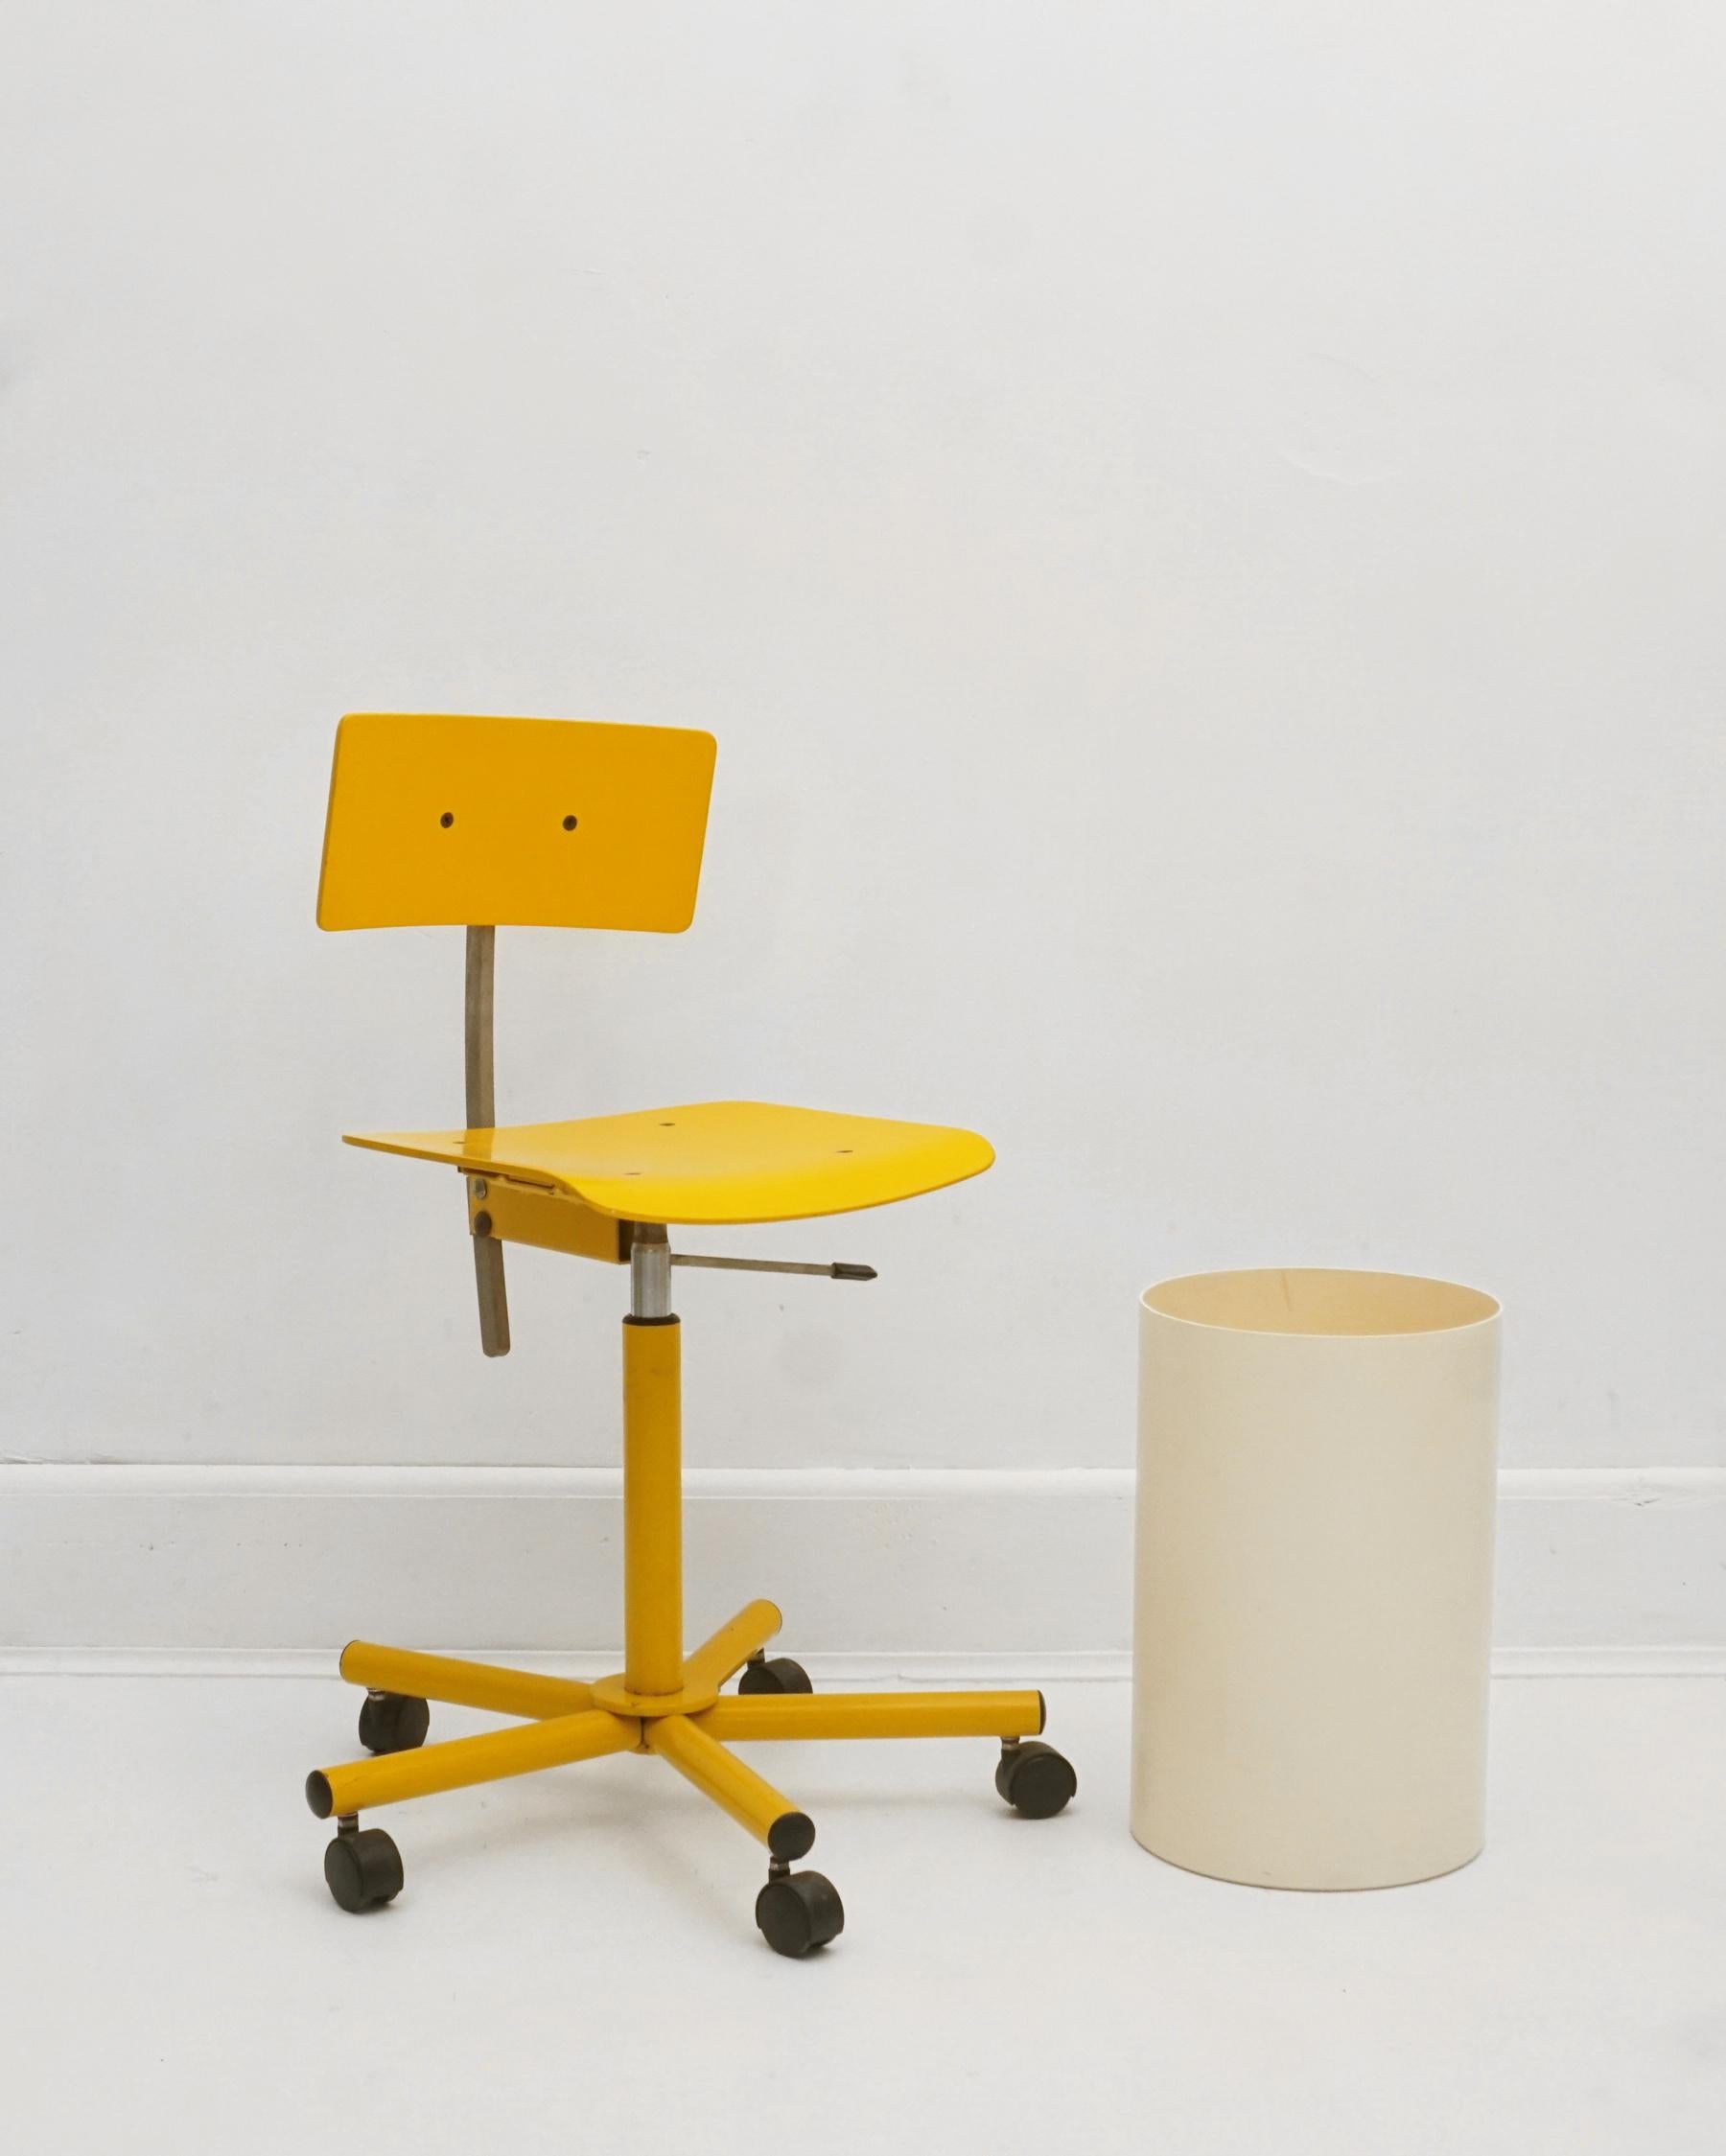 Chaise de bureau Teen des années 1980, conçue par Anna Anselmi pour Beiffeplast, fabriquée à Padoue, en Italie. La chaise réglable, surtout dans cette couleur, est extrêmement rare. Il n'en reste que quelques-uns en circulation, ce qui fait de cette